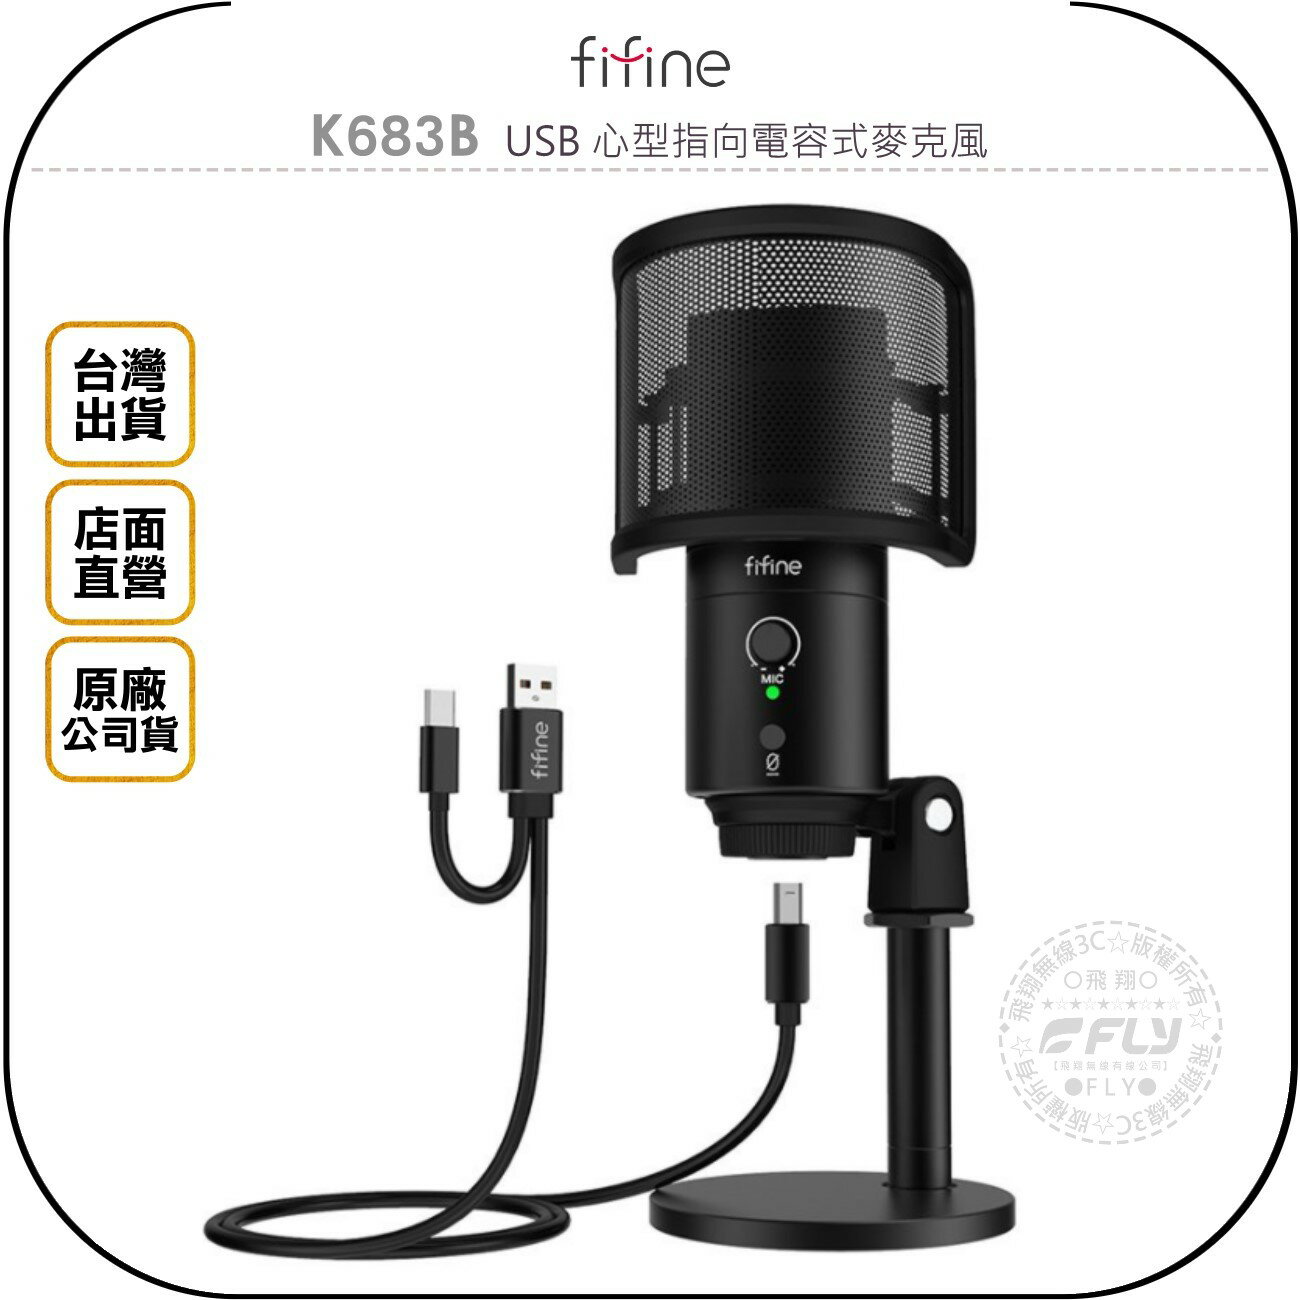 《飛翔無線3C》FIFINE K683B USB 心型指向電容式麥克風◉公司貨◉TYPE-C 接頭◉錄音直播◉會議教學